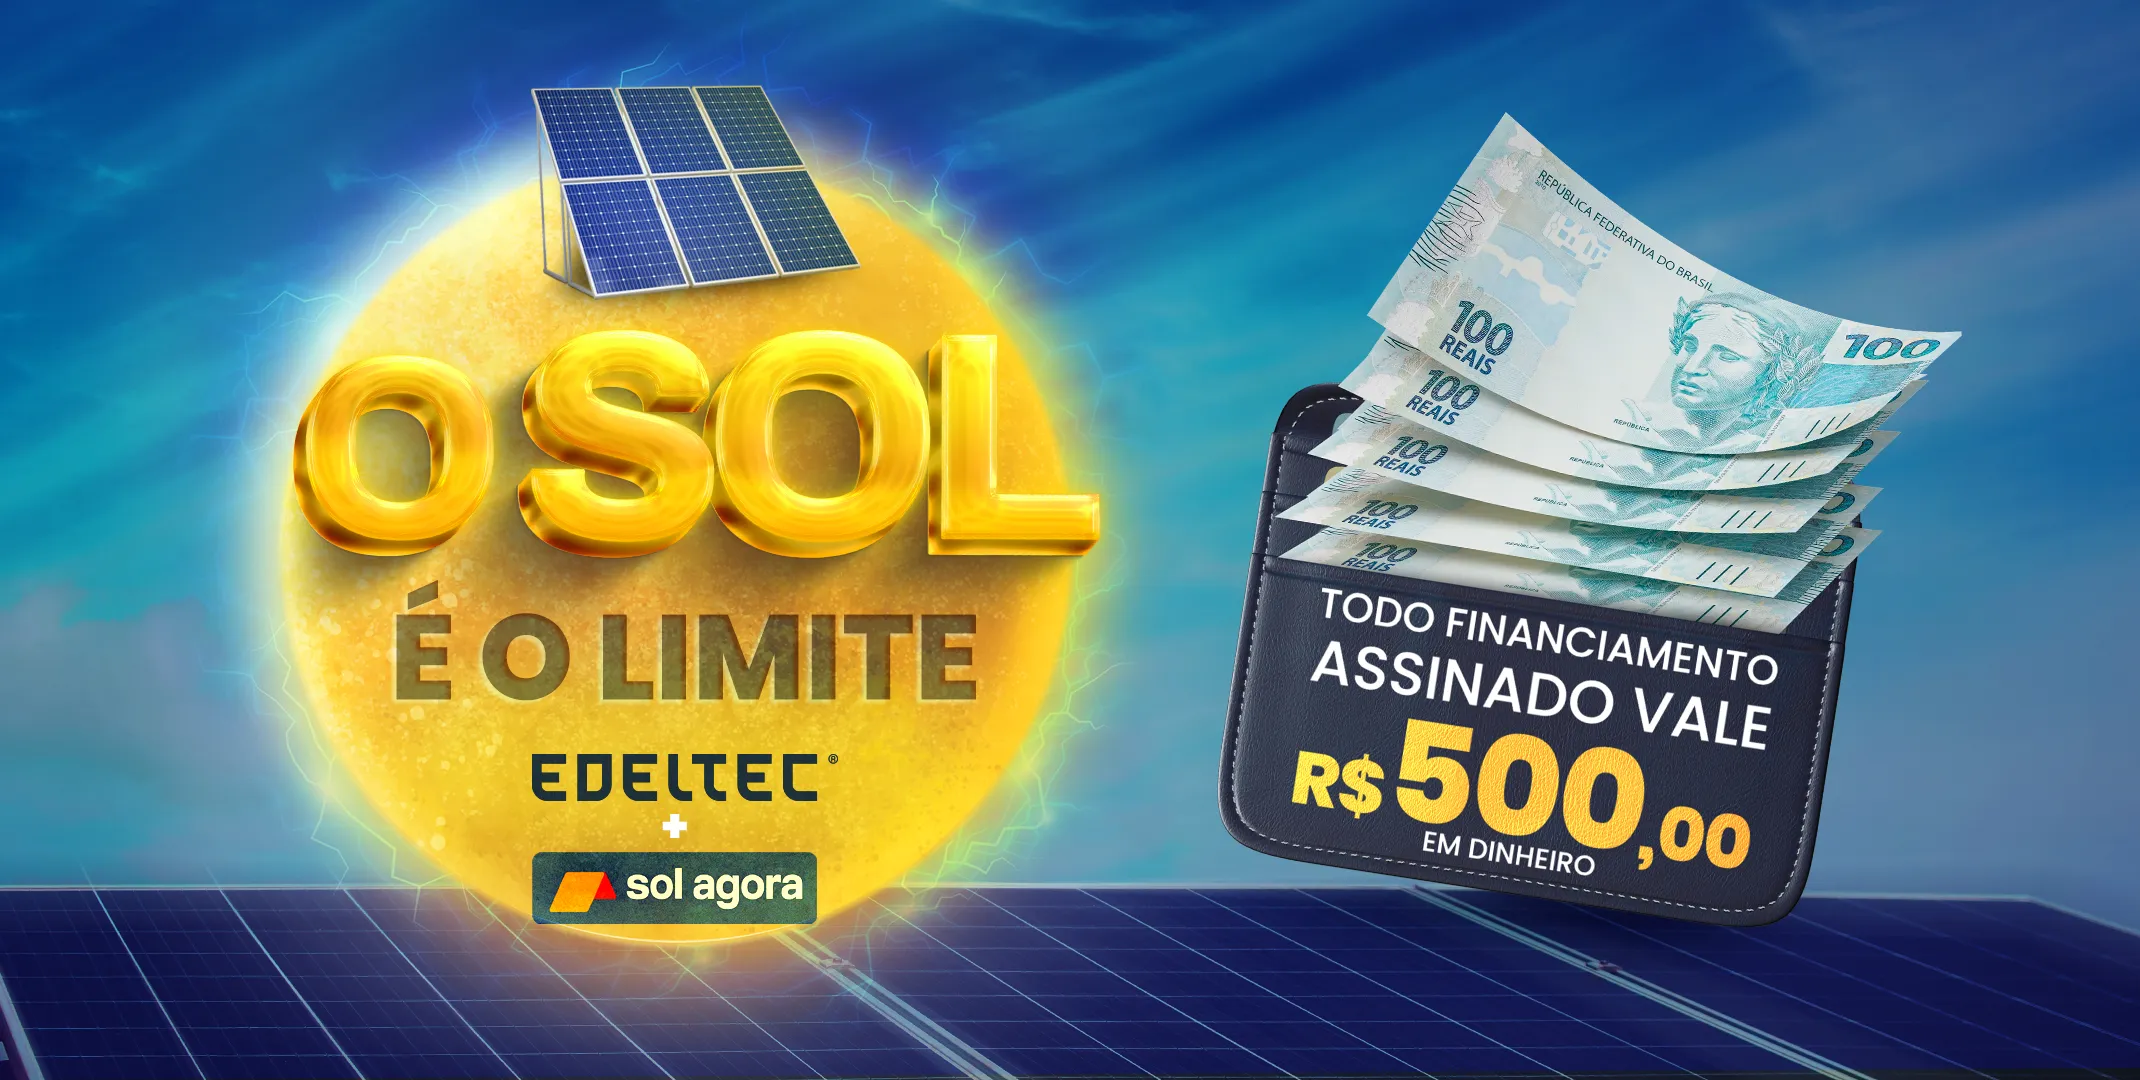 Campanha “O sol é o limite”: Edeltec + Sol Agora – PROMOÇÃO ENCERRADA 31/07/2023.